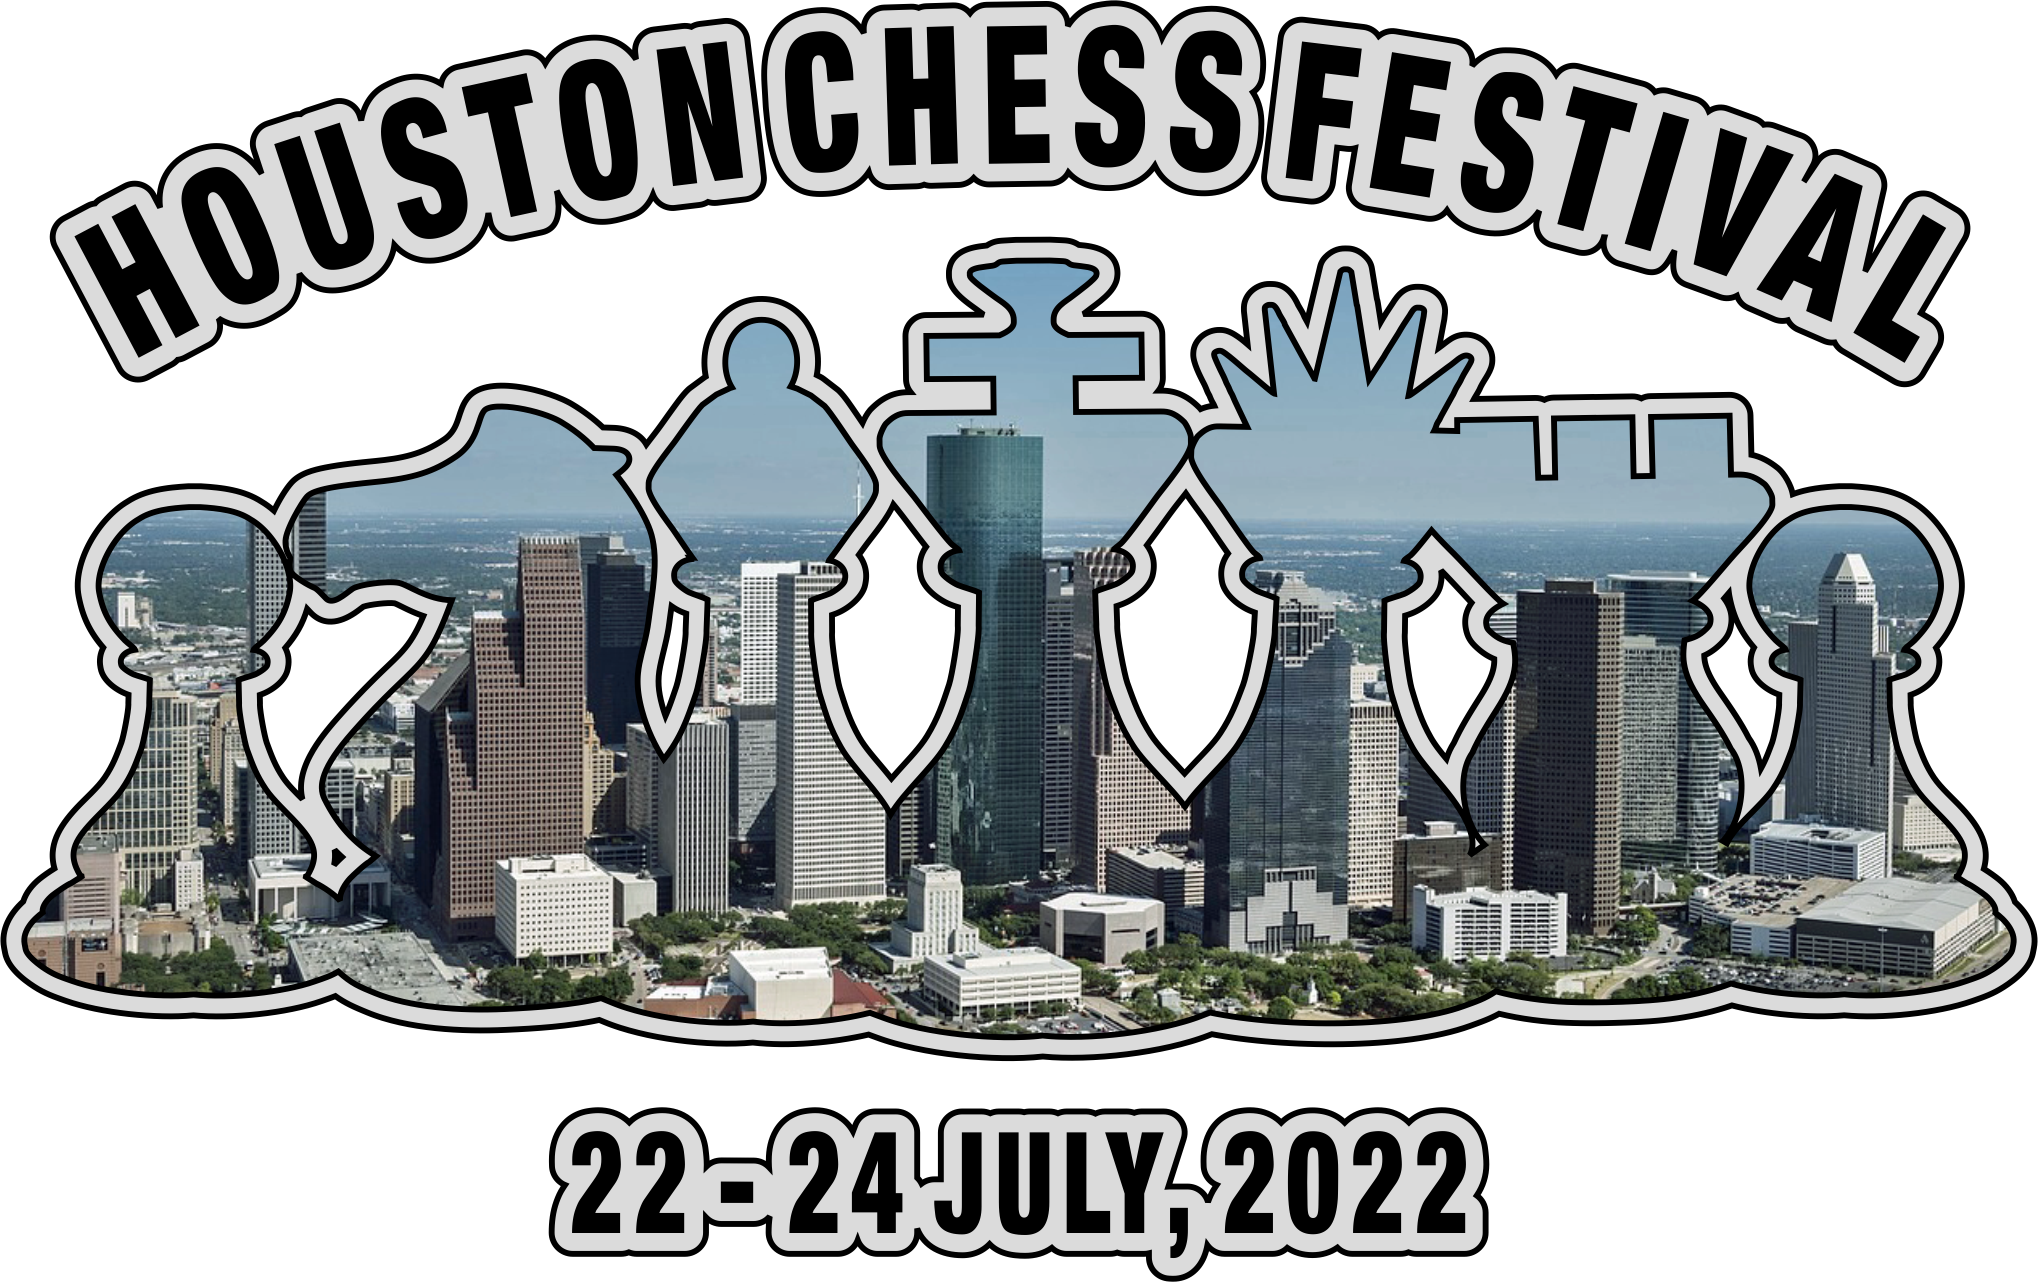 https://www.kingregistration.com/public/houstonchess/2022houstonchessfestival.png